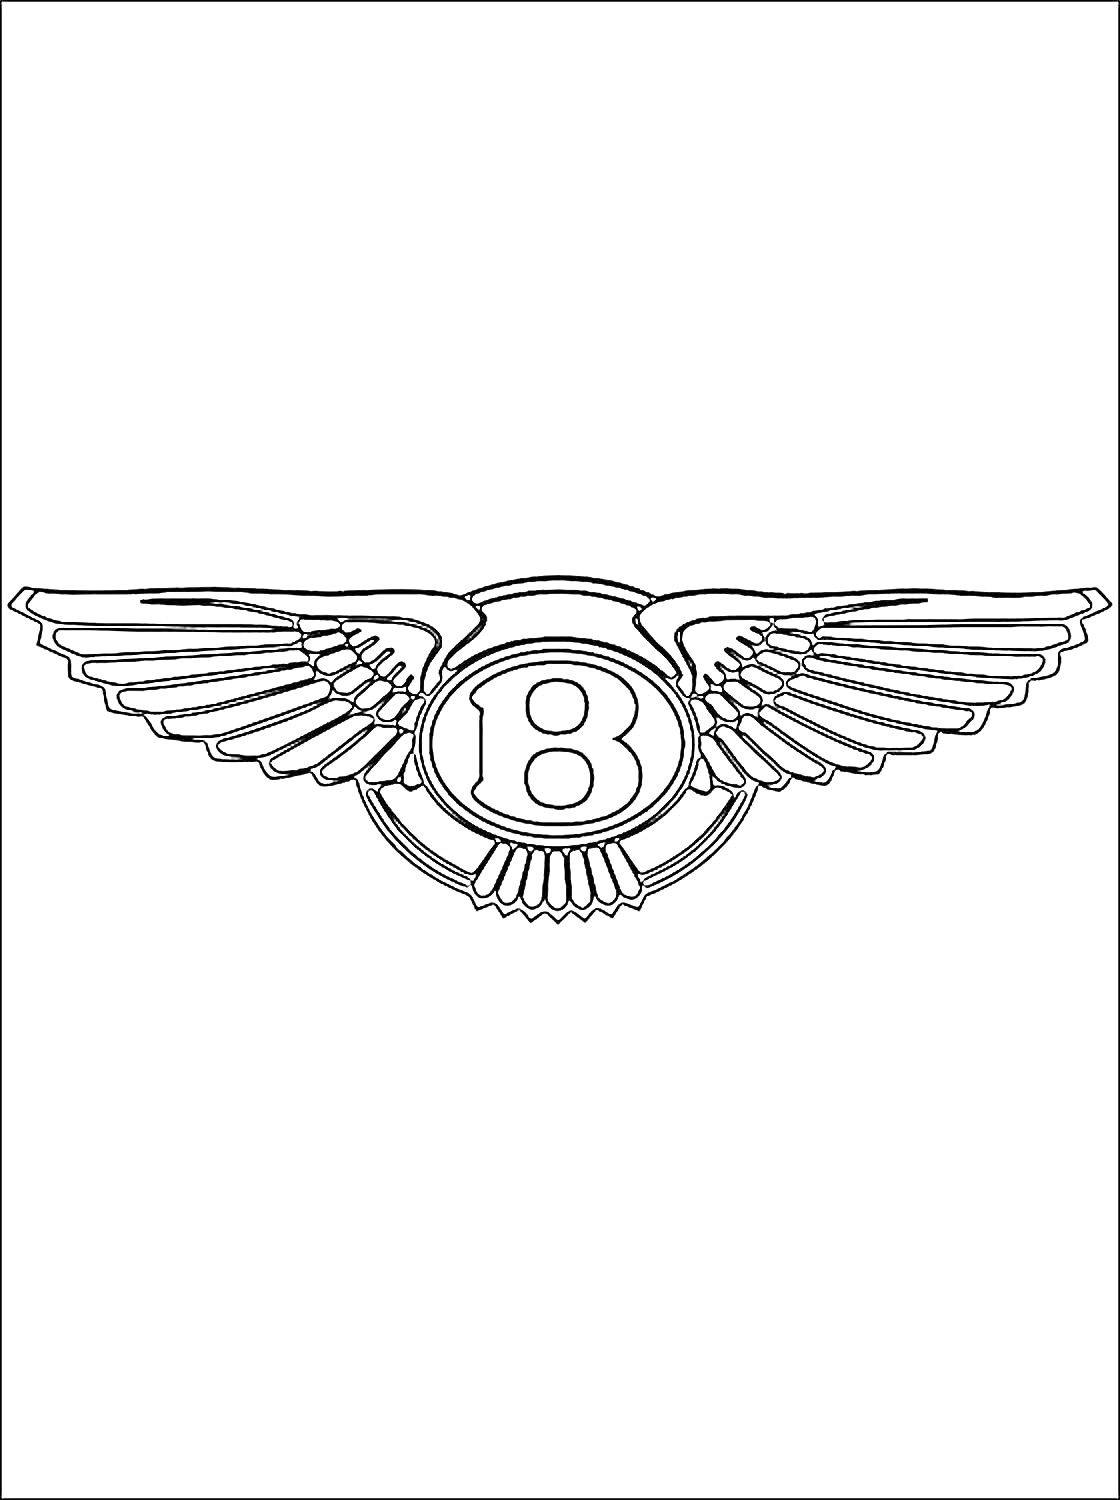 Логотип Бентли с крыльями и буквой 